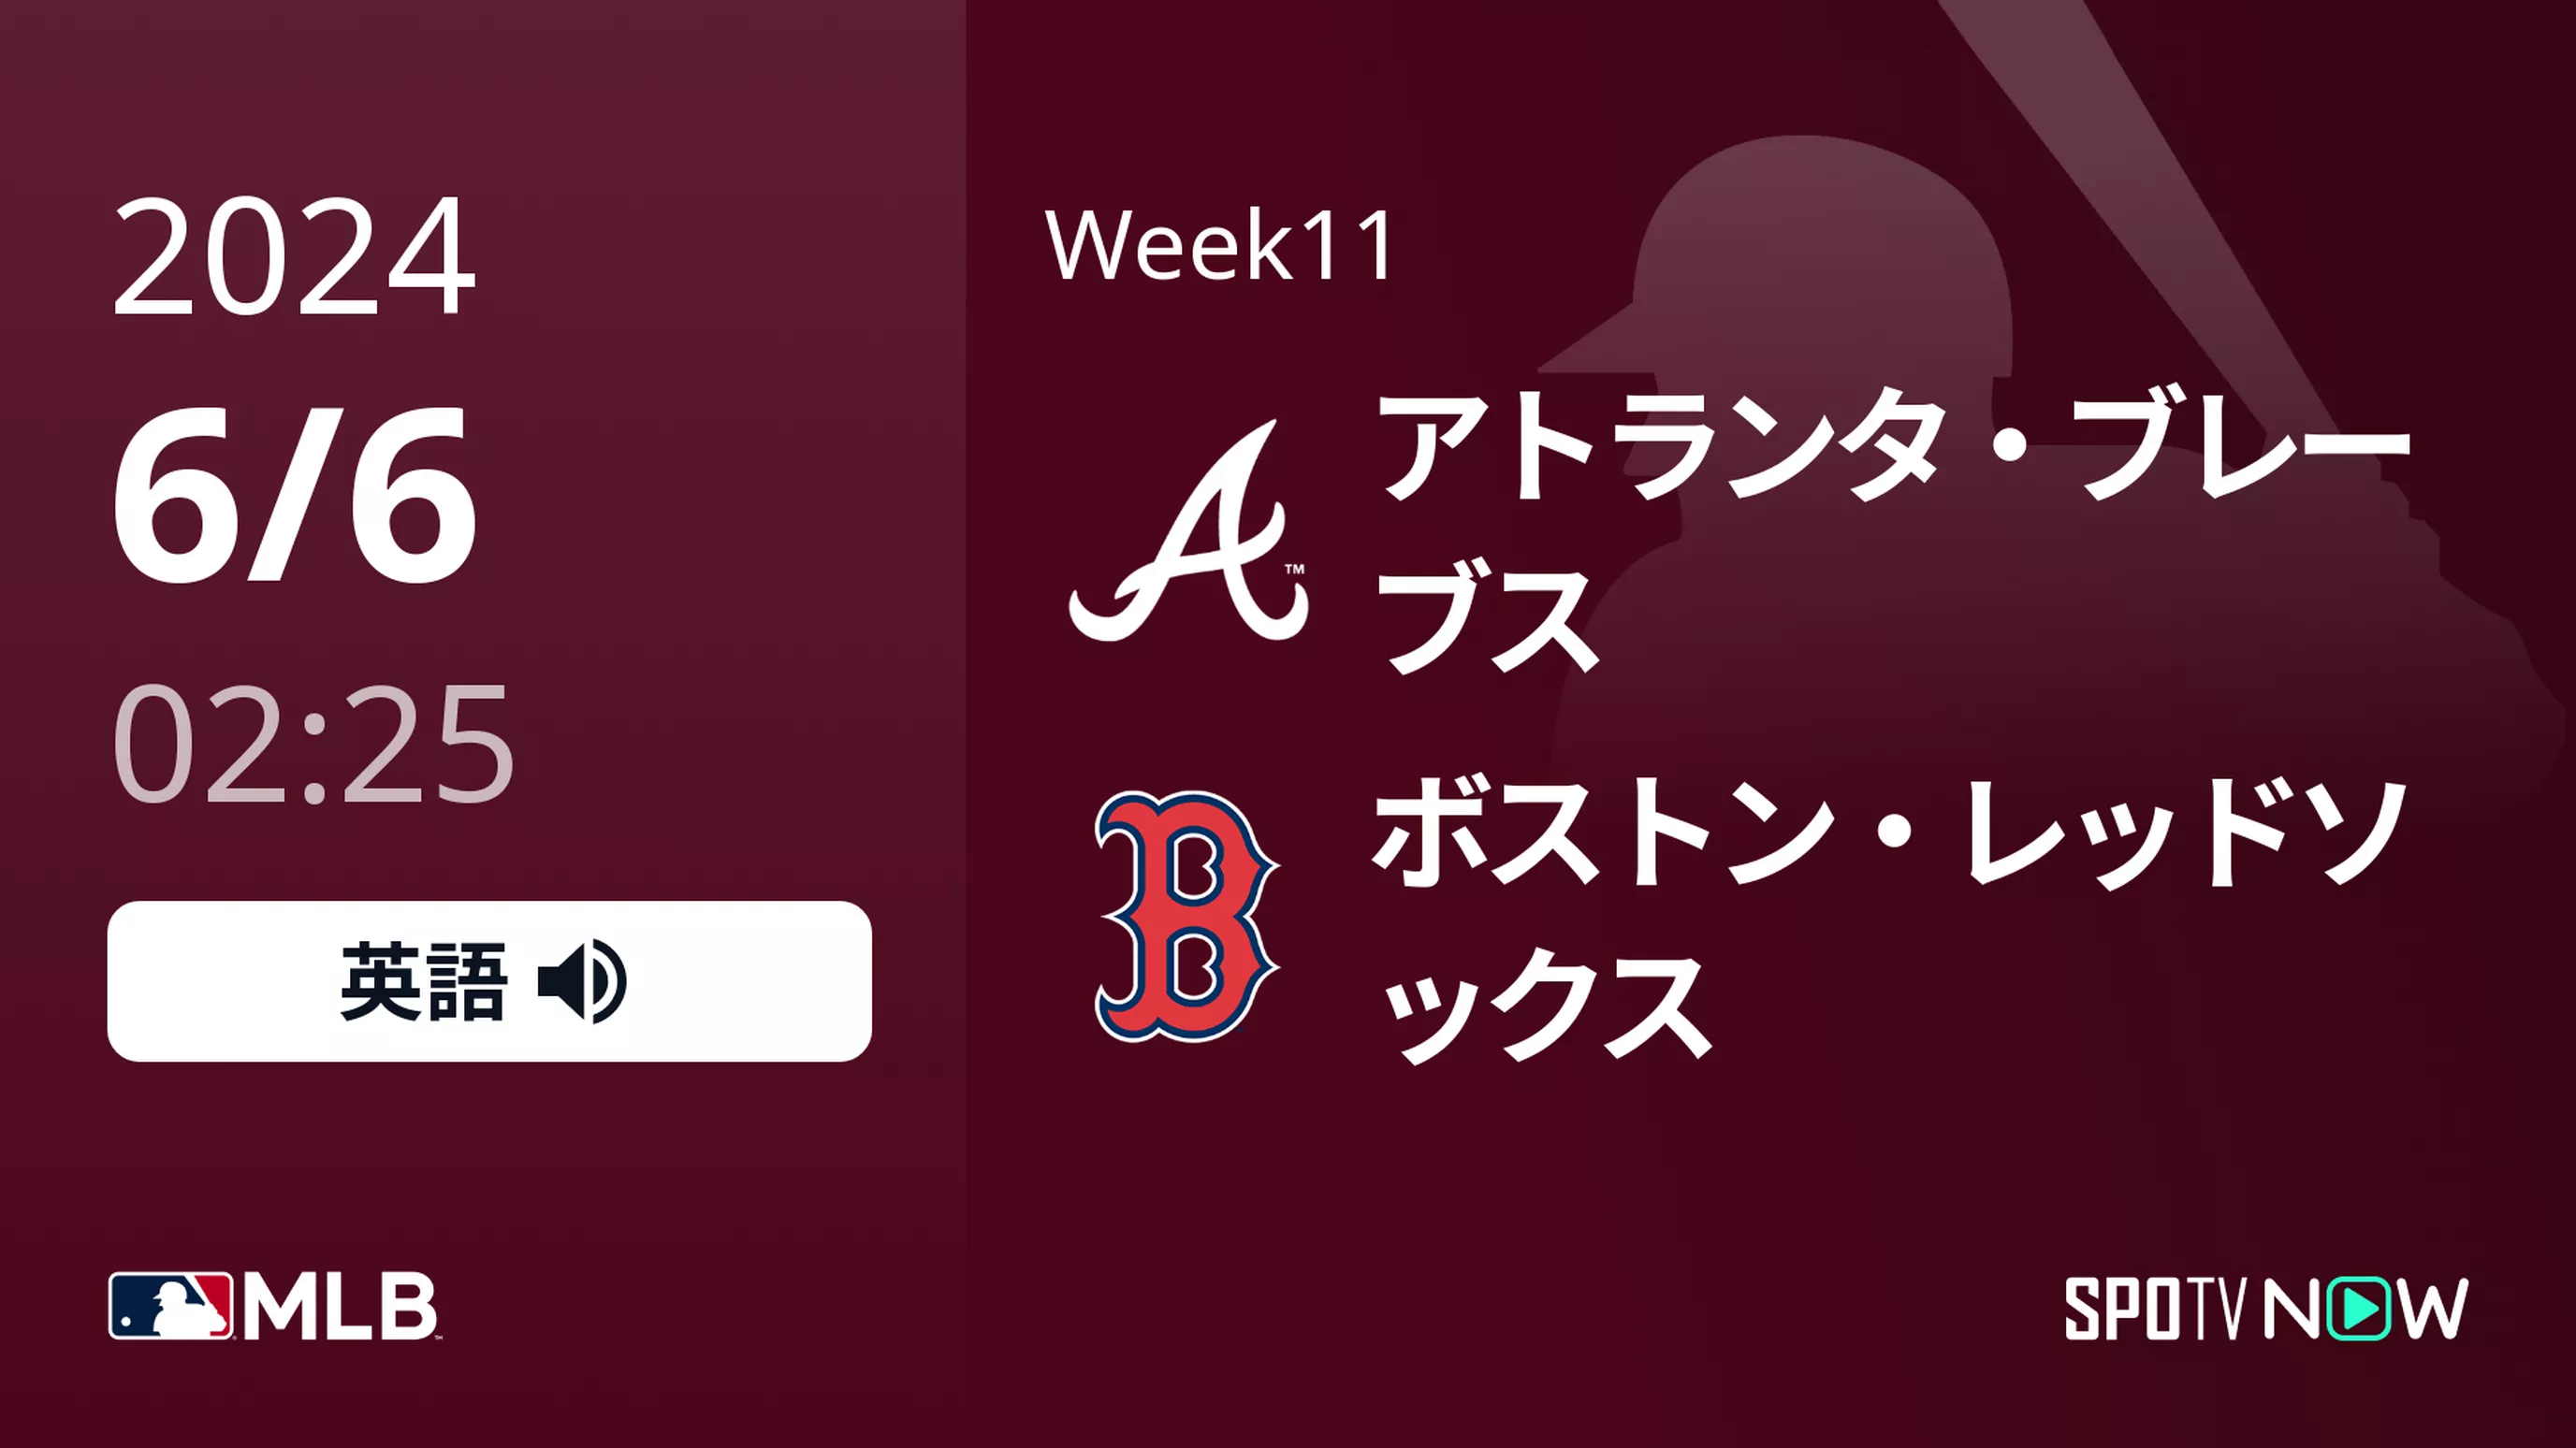 Week11 ブレーブス vs Rソックス 6/6[MLB]